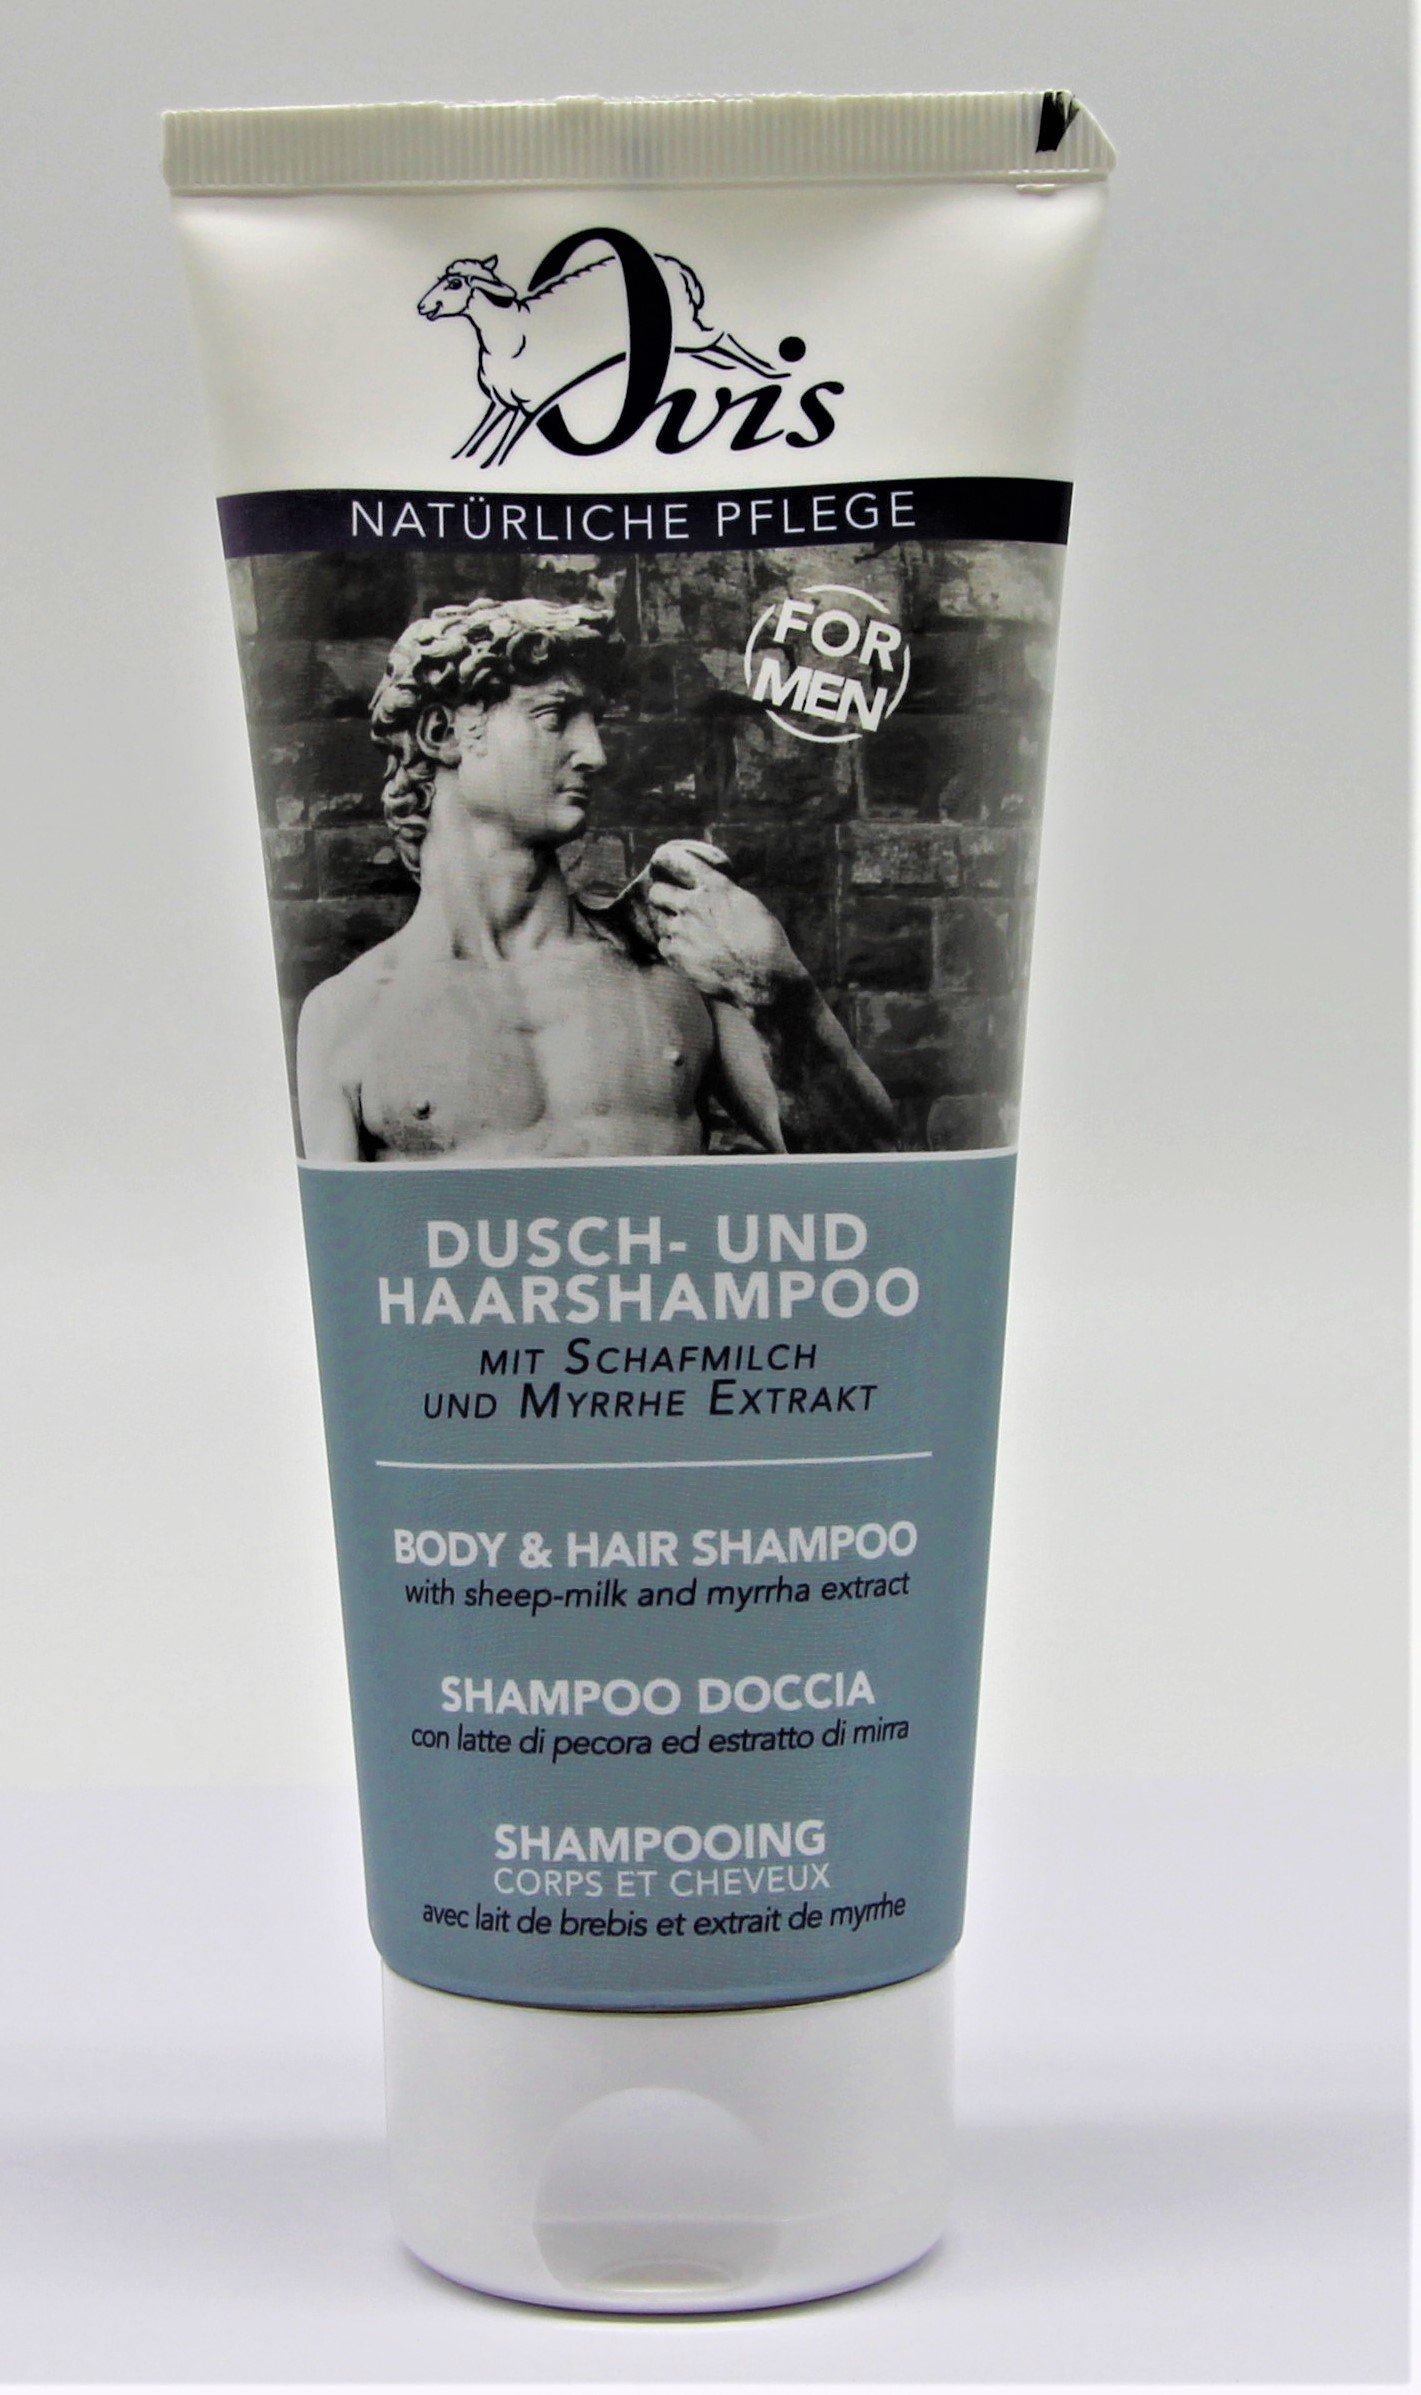 Dusch - und Haarshampoo for Men